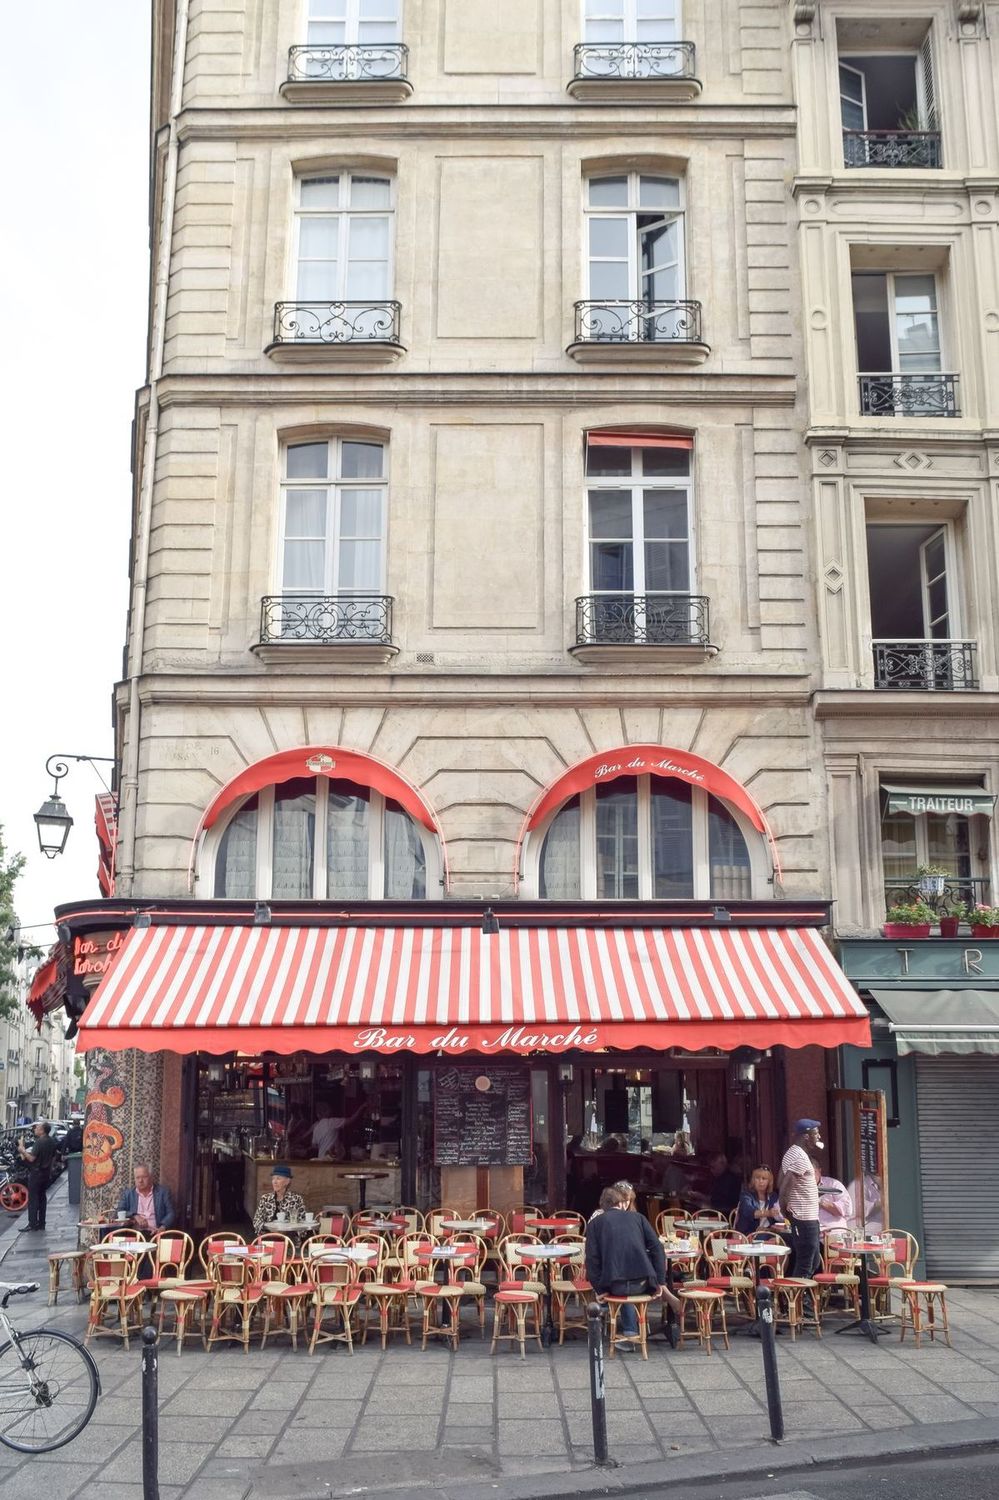 Bar du Marché, Paris